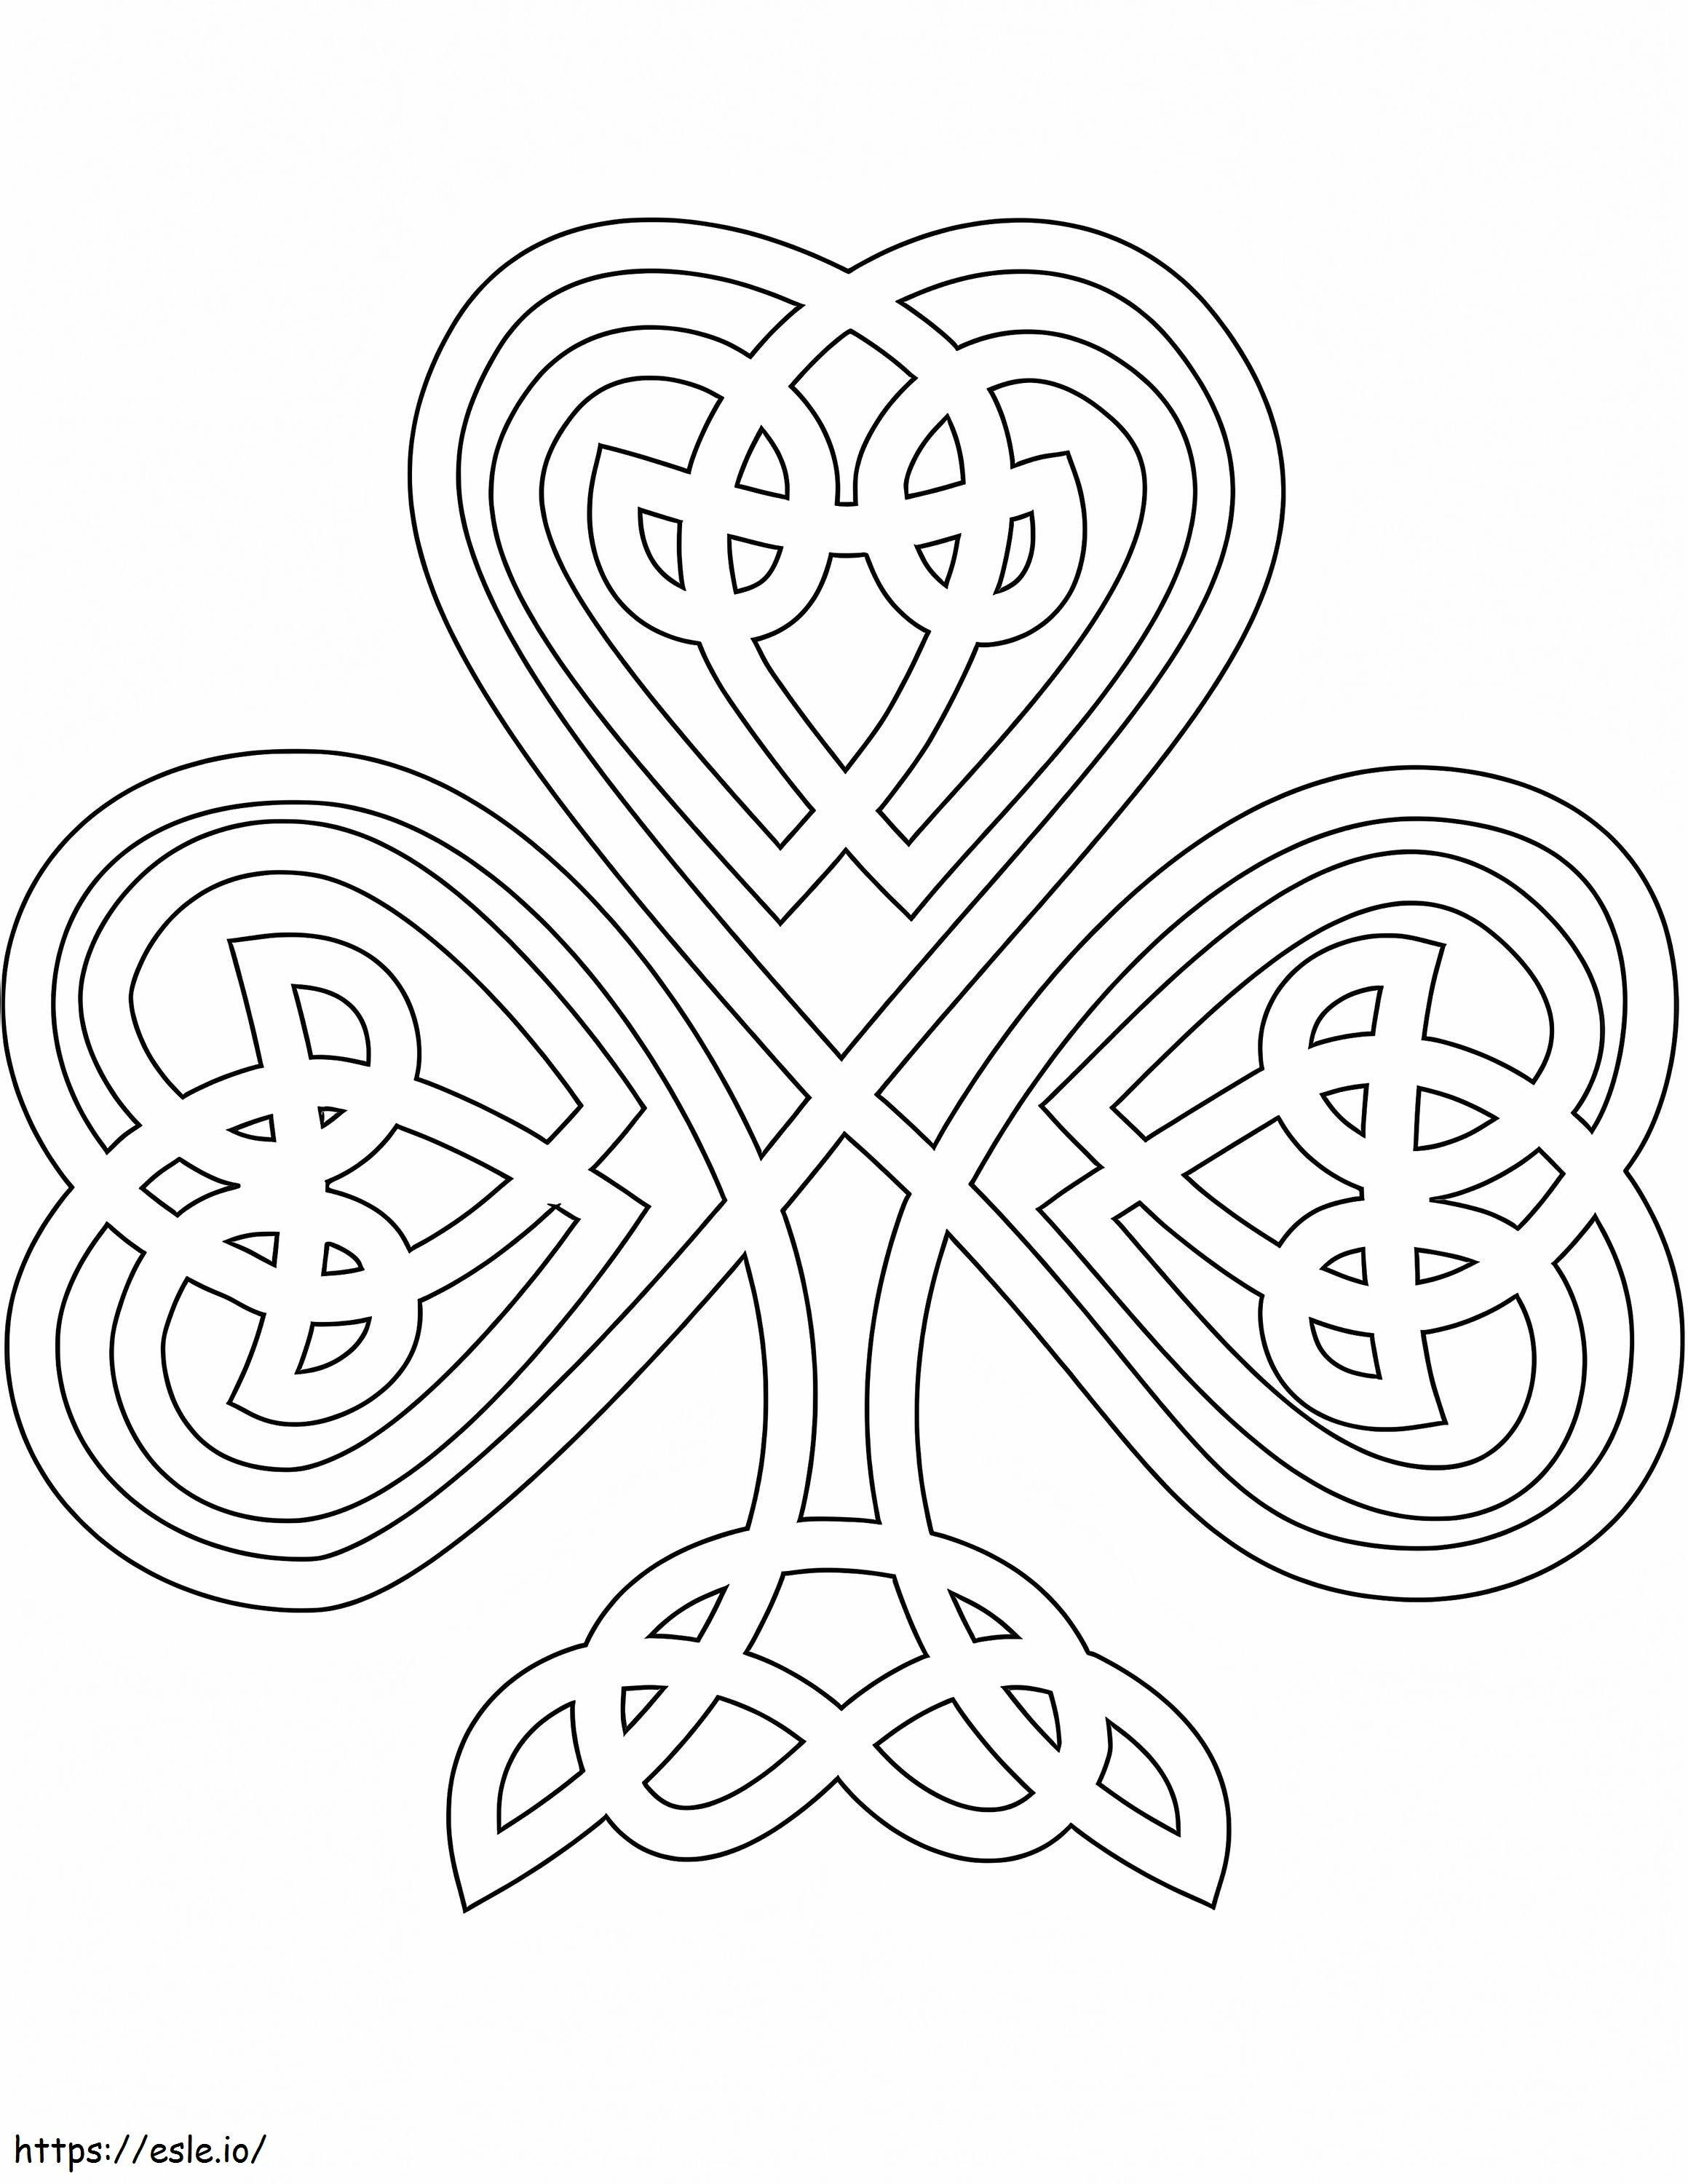 Kleeblatt im keltischen Stil ausmalbilder